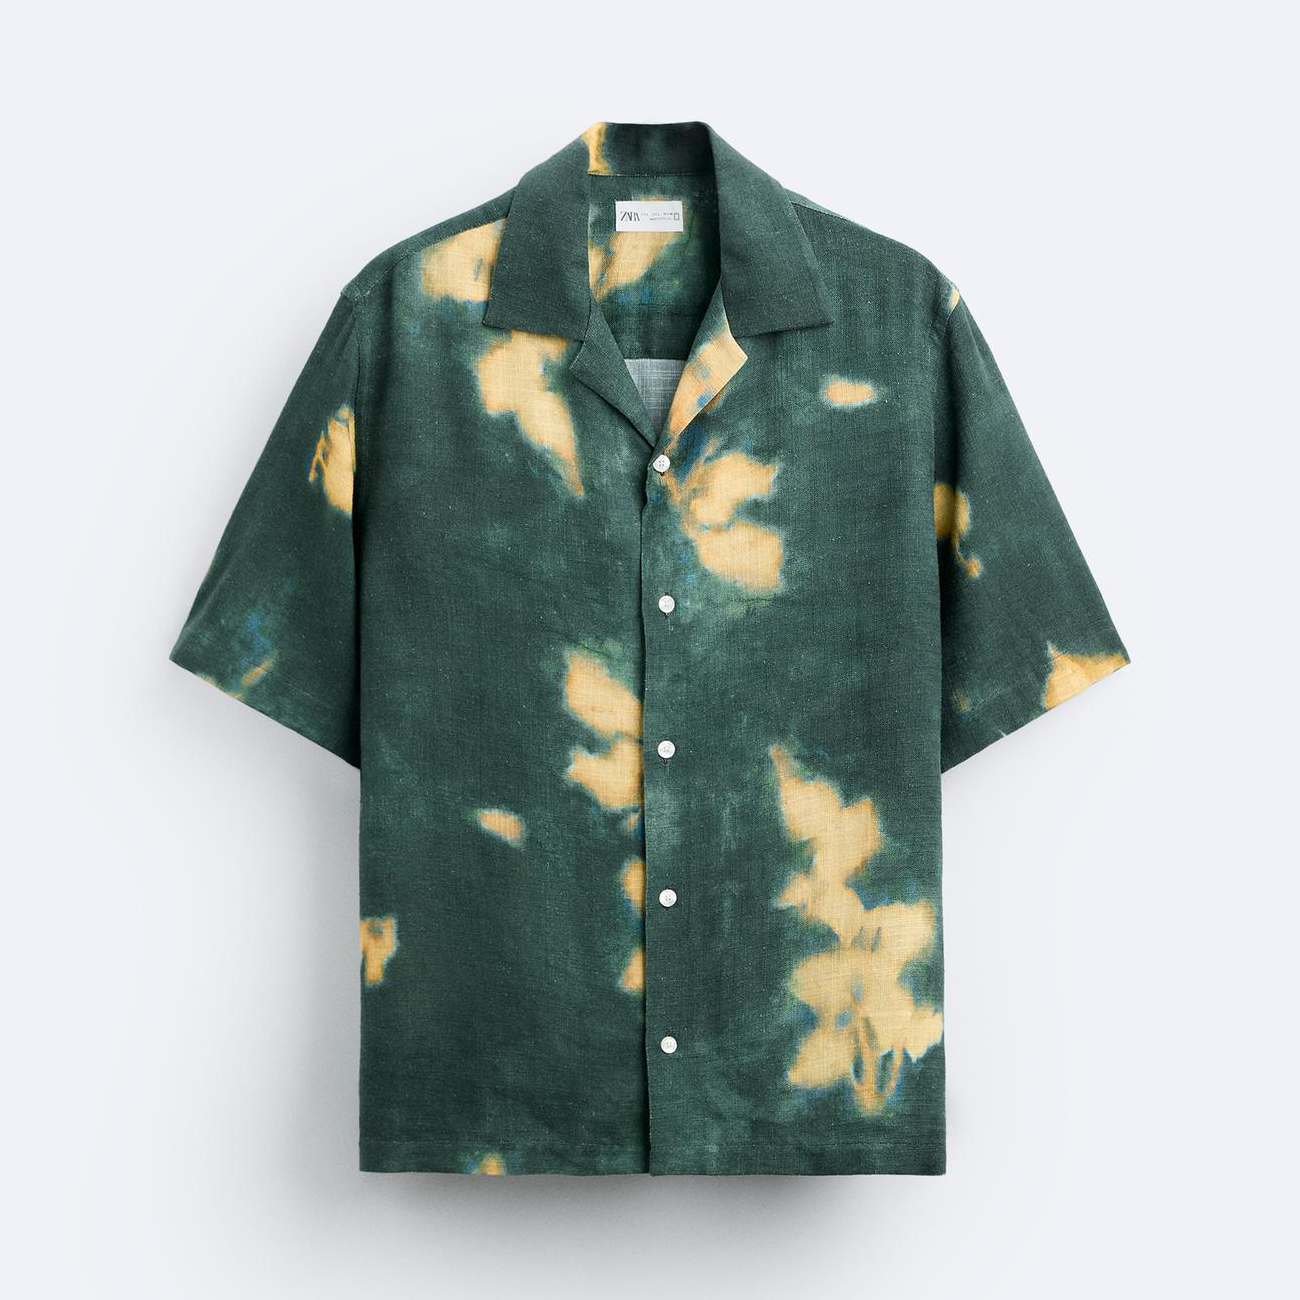 Рубашка Zara Printed Linen/viscose, зеленый рубашка zara linen оливковый